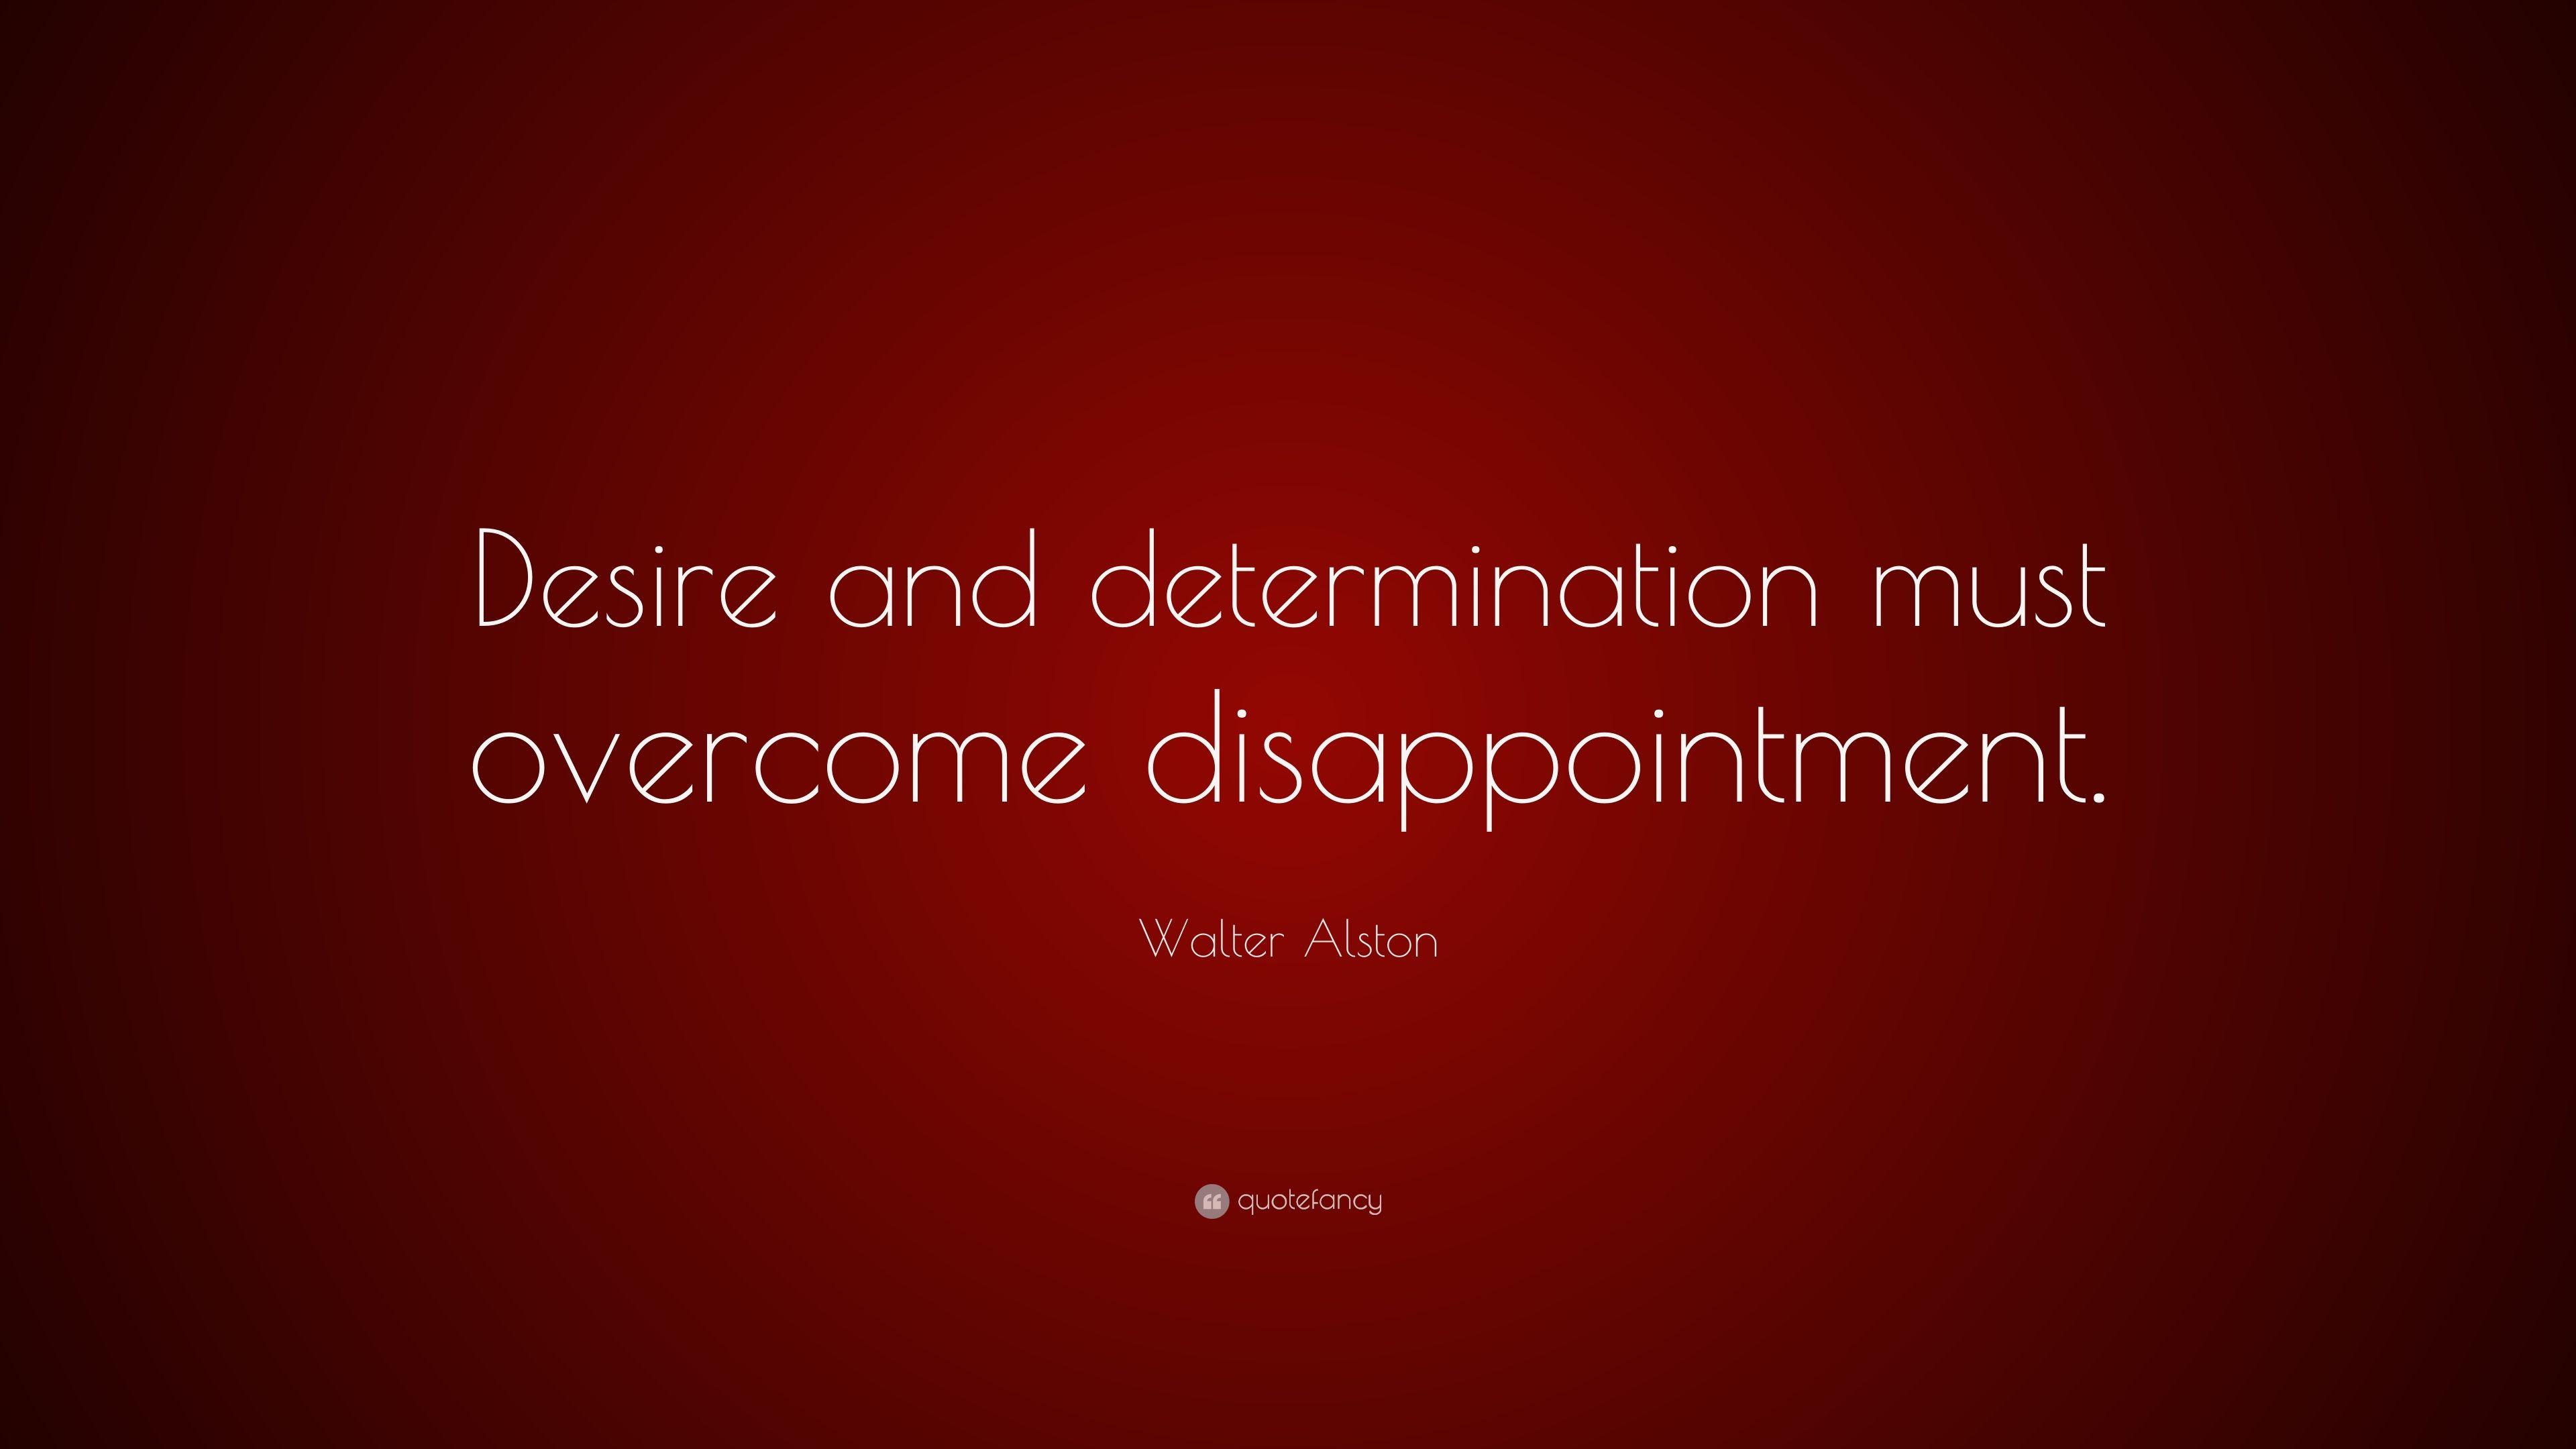 Walter Alston Quote: “Desire and determination must overcome